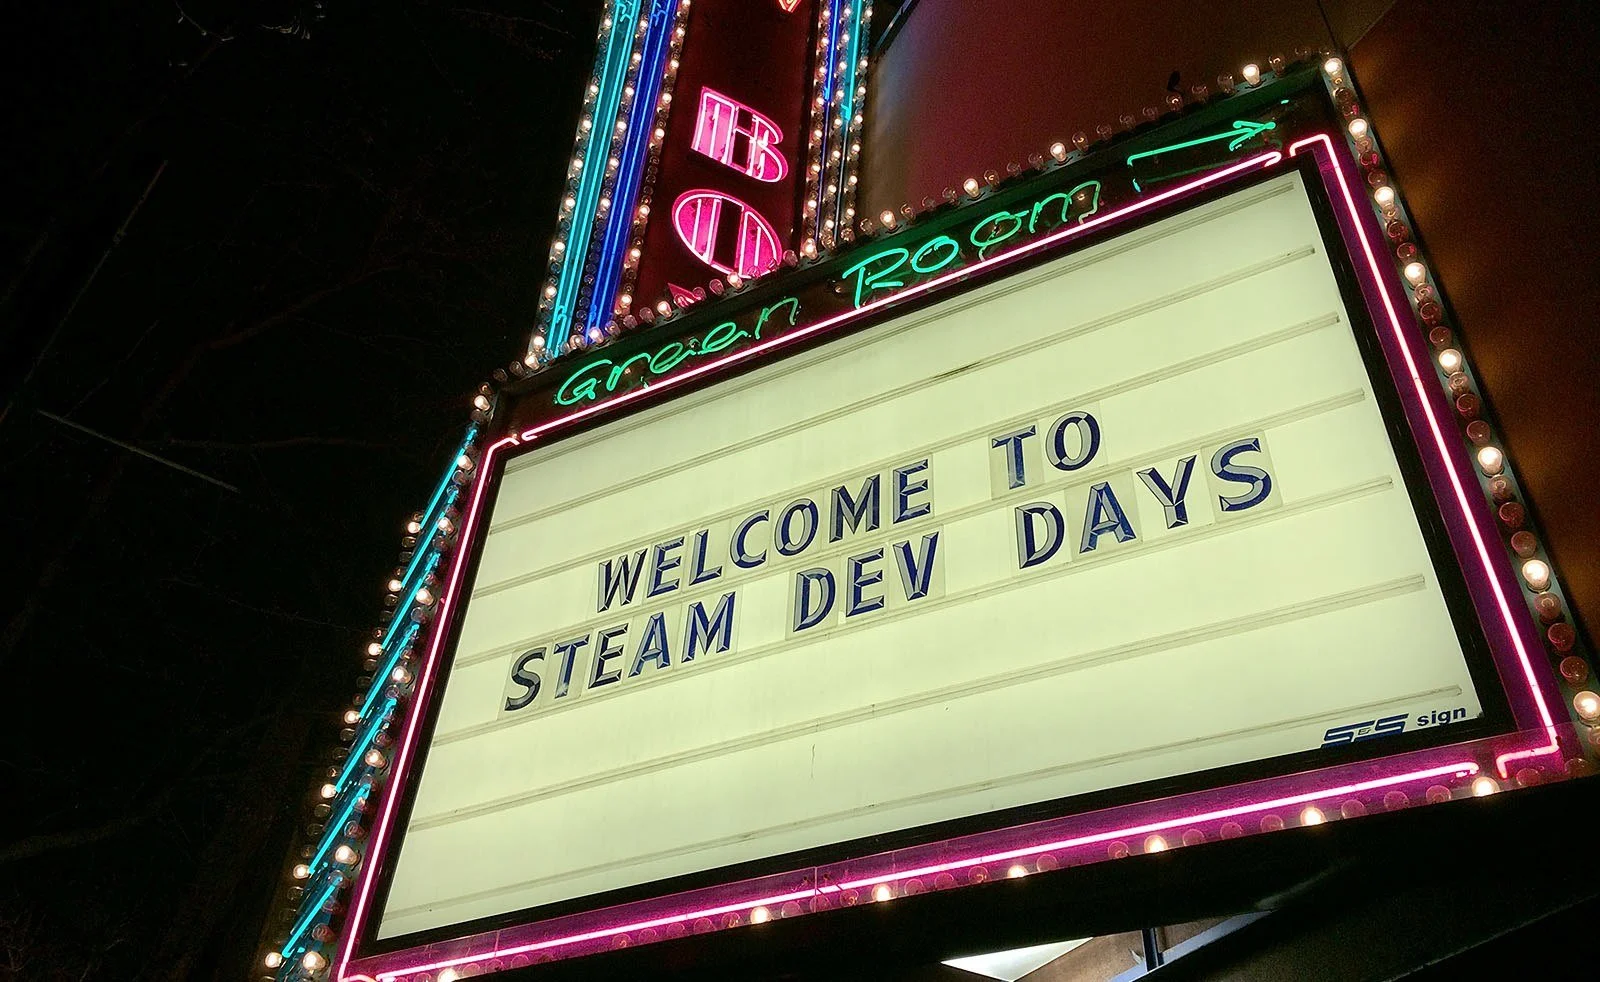 Уже пару лет Valve раздумывала о том, чтобы как-нибудь собрать вместе разработчиков, издающих игры через Steam, и передать им накопленный опыт разработки и взаимодействия с игроками. Сначала была идея сделать это в рамках GDC, потом – отдельным событием в одном из европейских городов, и вот наконец буквально несколько месяцев назад коллектив Valve принял решение провести эту конференцию — названную Steam Dev Days — прямо у себя дома, в Сиэтле, 15 и 16 января. Следуя правилу «концентрироваться на главном», на конференцию не допустили ни одного журналиста — но при этом и ни одному разработчику в регистрации не отказали.